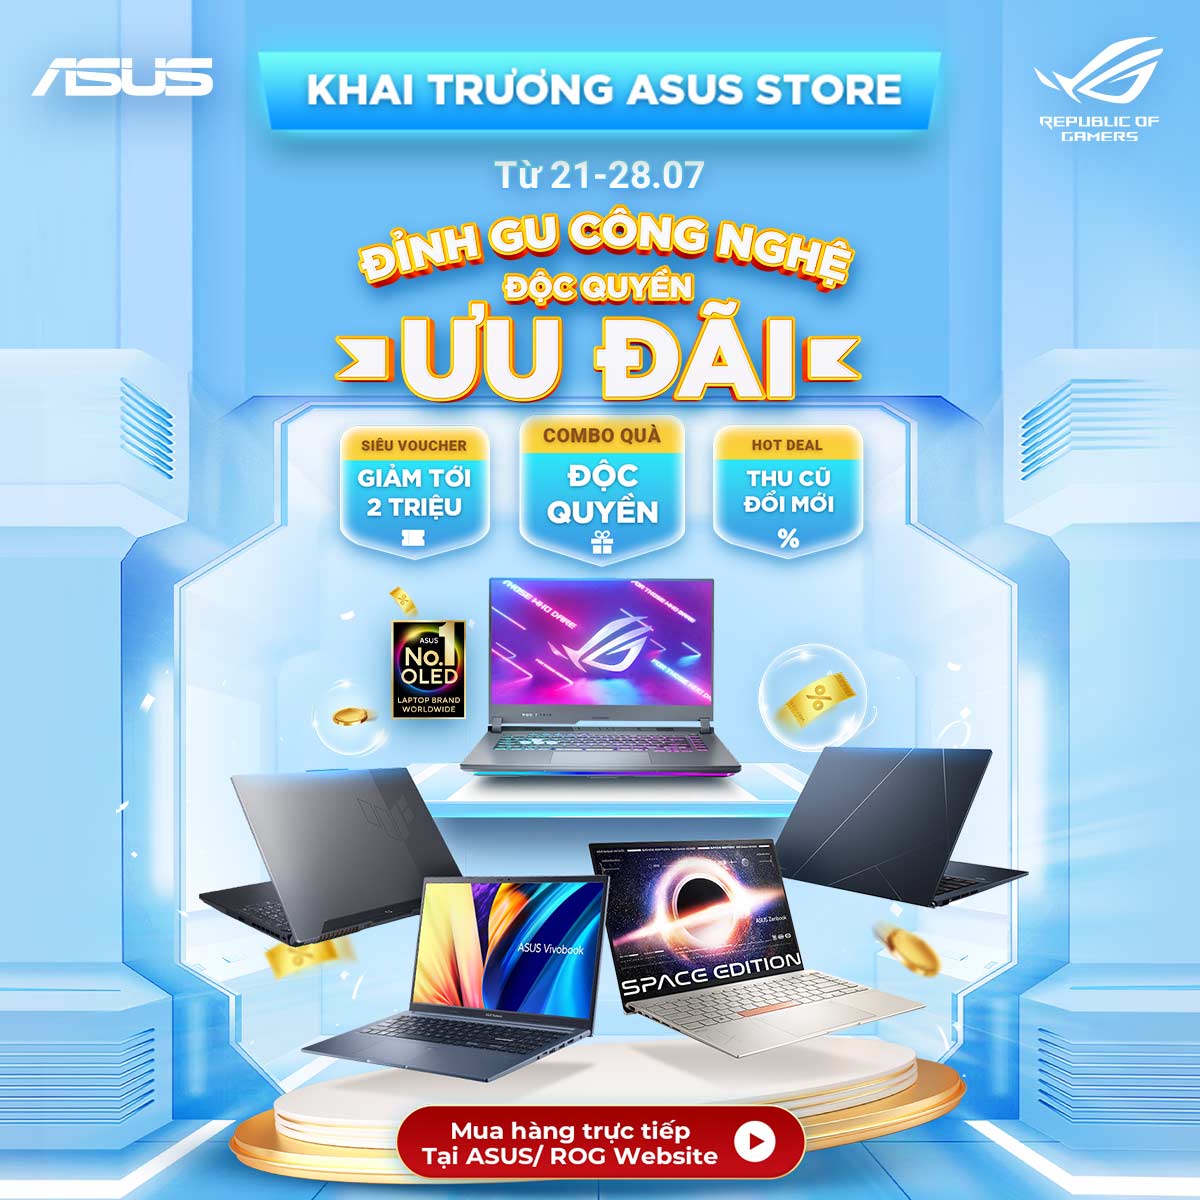 ASUS Việt Nam giới thiệu trang mua hàng trực tuyến ASUS Store với những mẫu laptop chính hãng và cao cấp